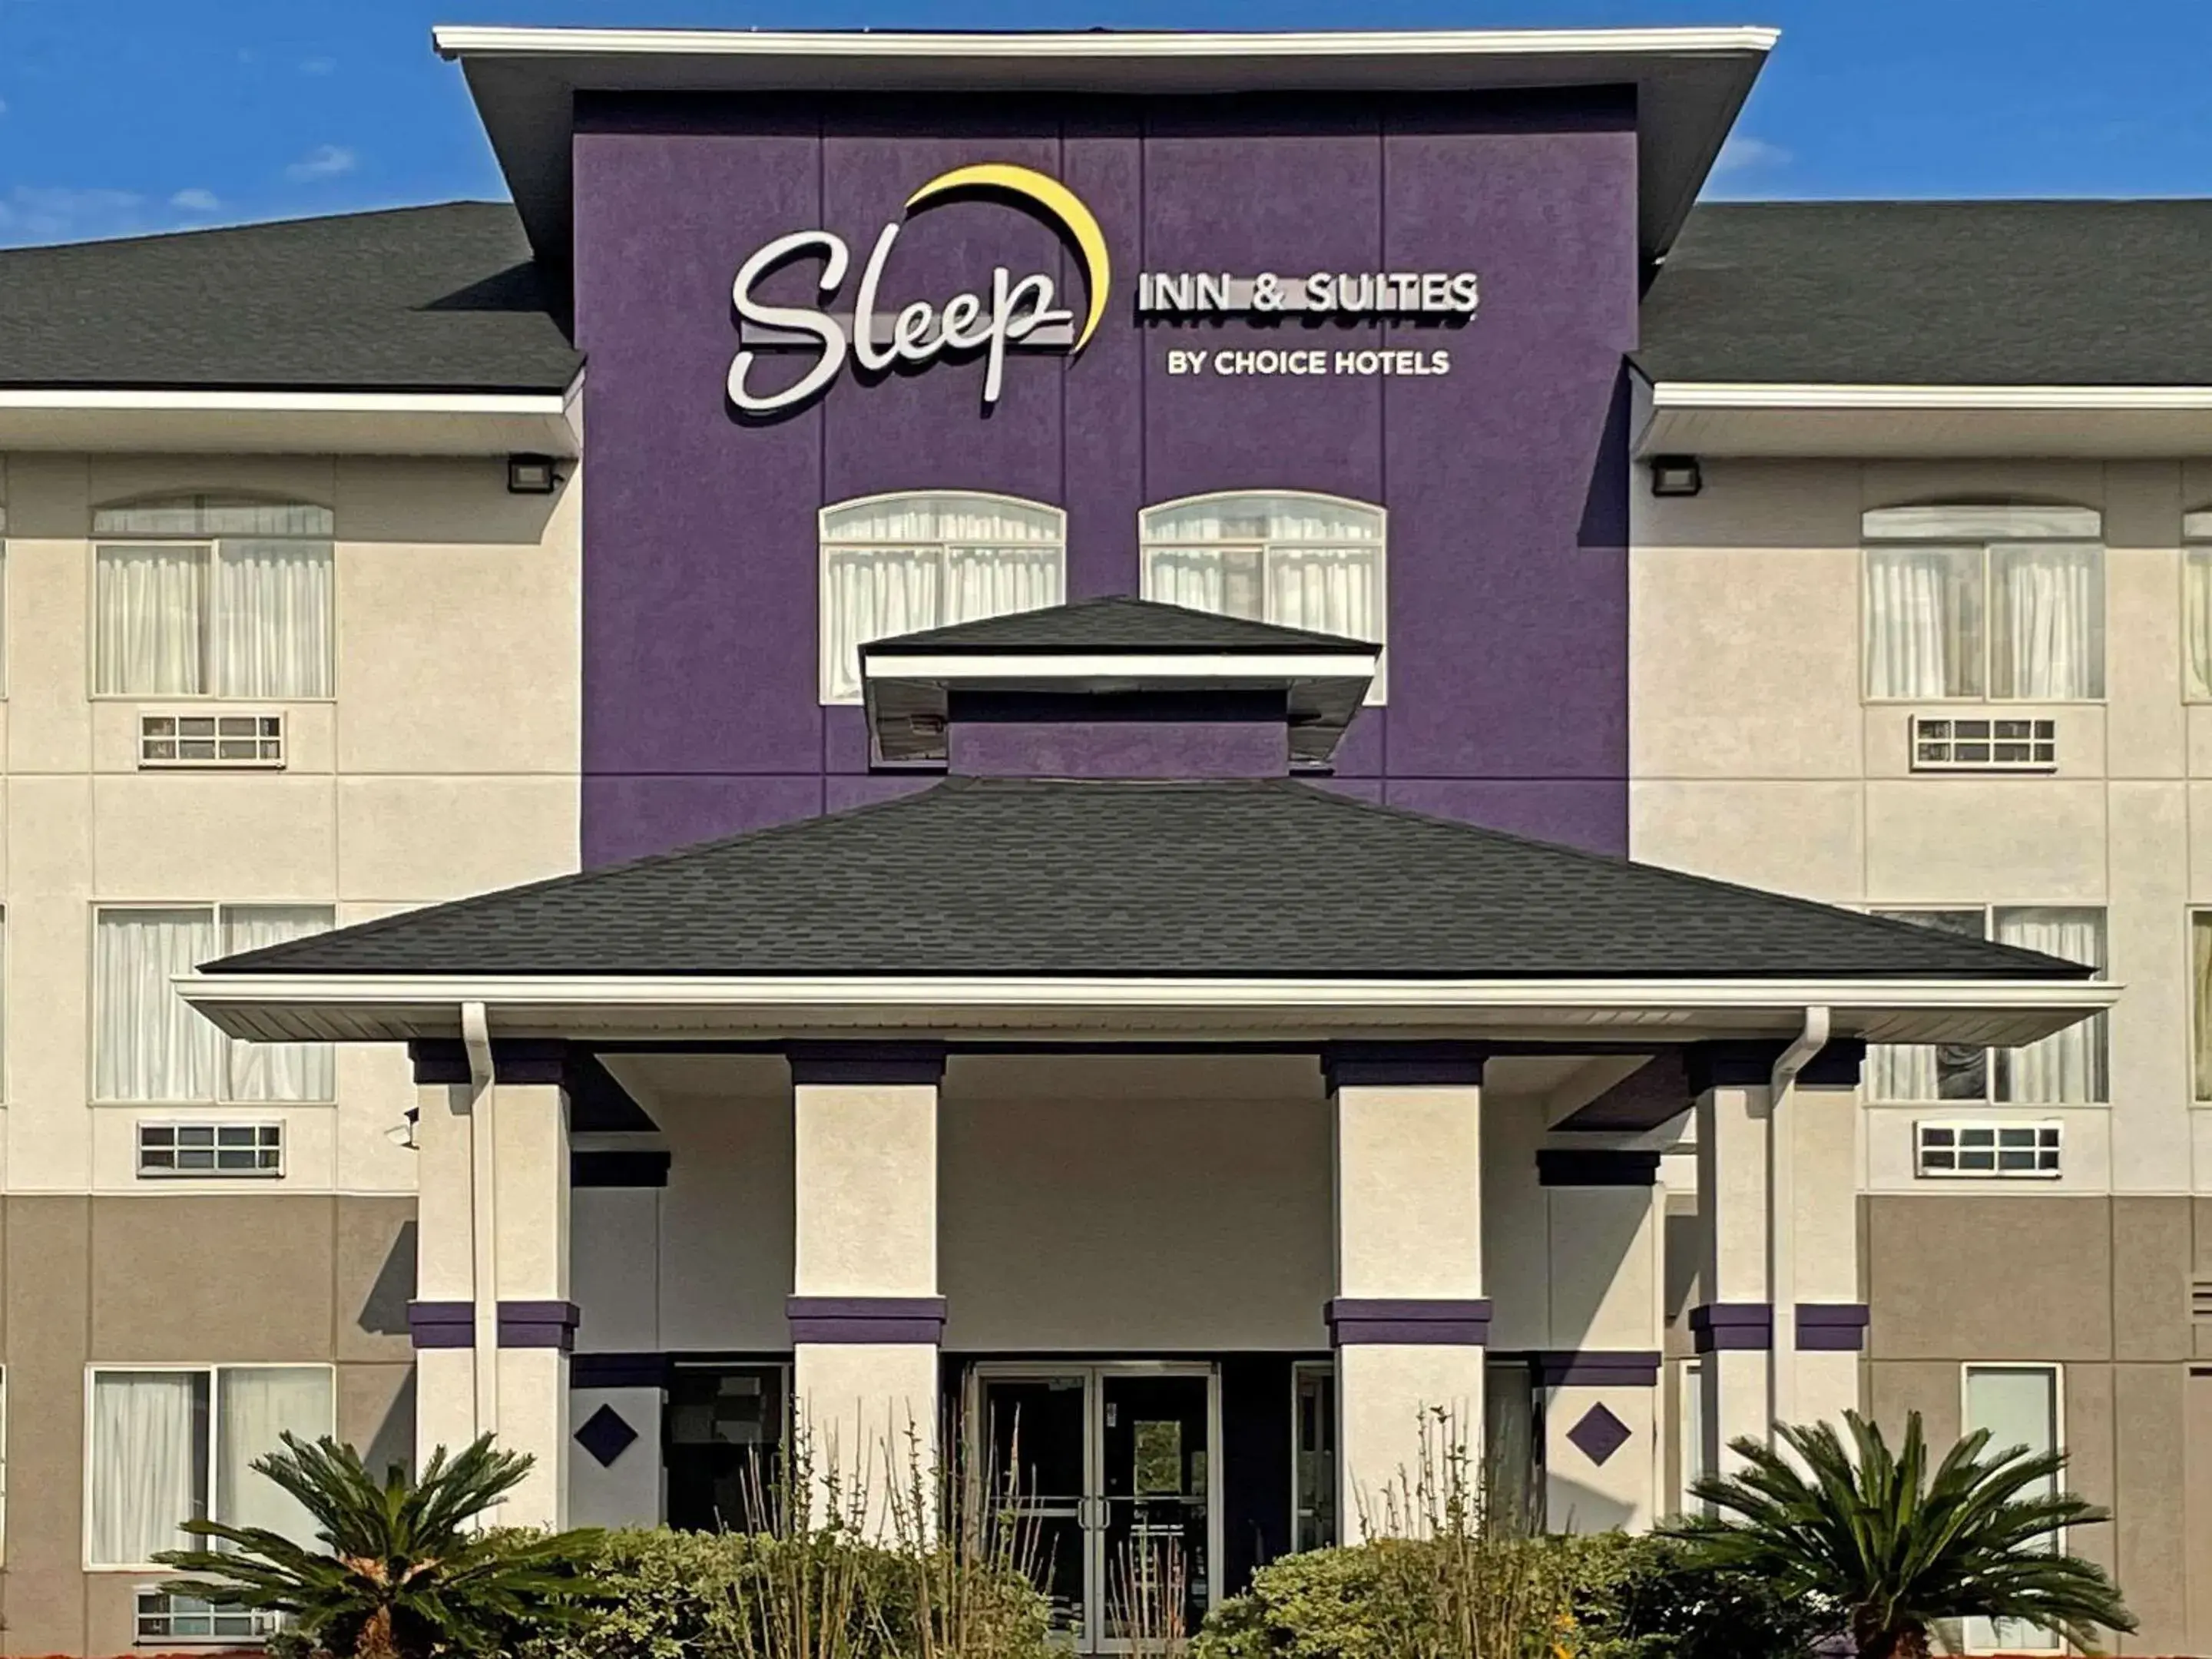 Property Building in Sleep Inn & Suites